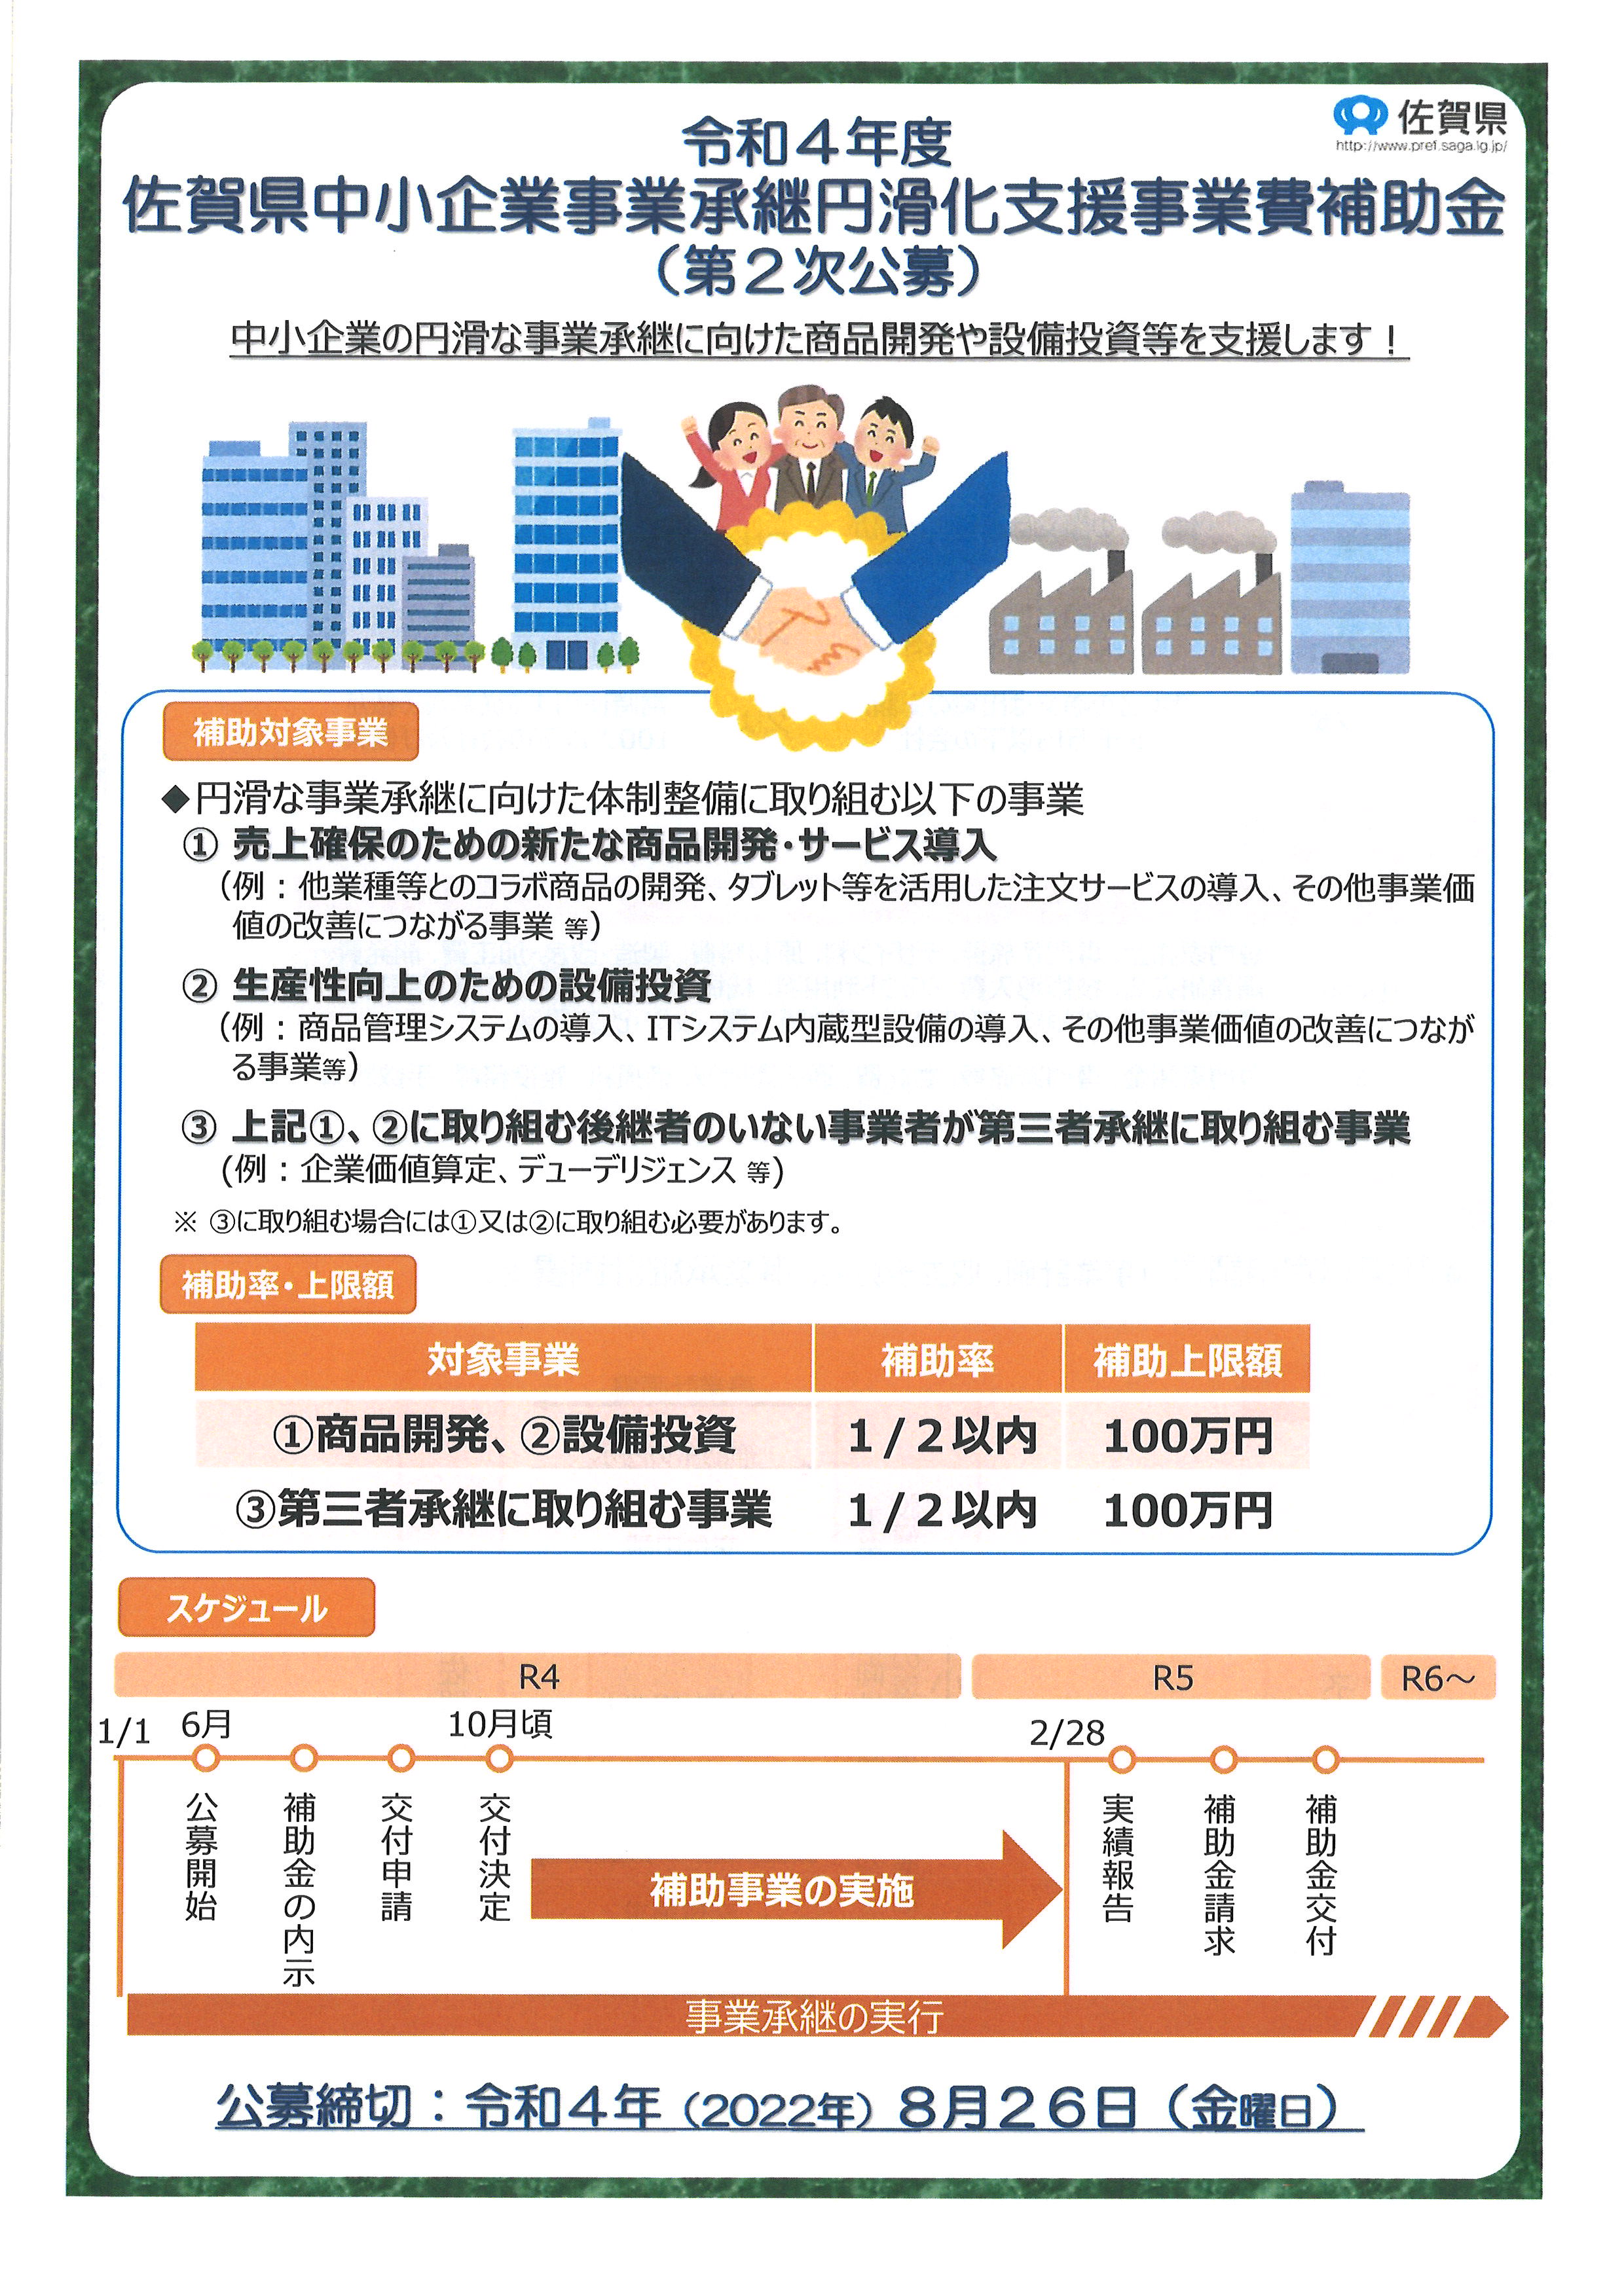 【第2次公募】R4 佐賀県中小企業事業承継円滑化支援事業費補助金